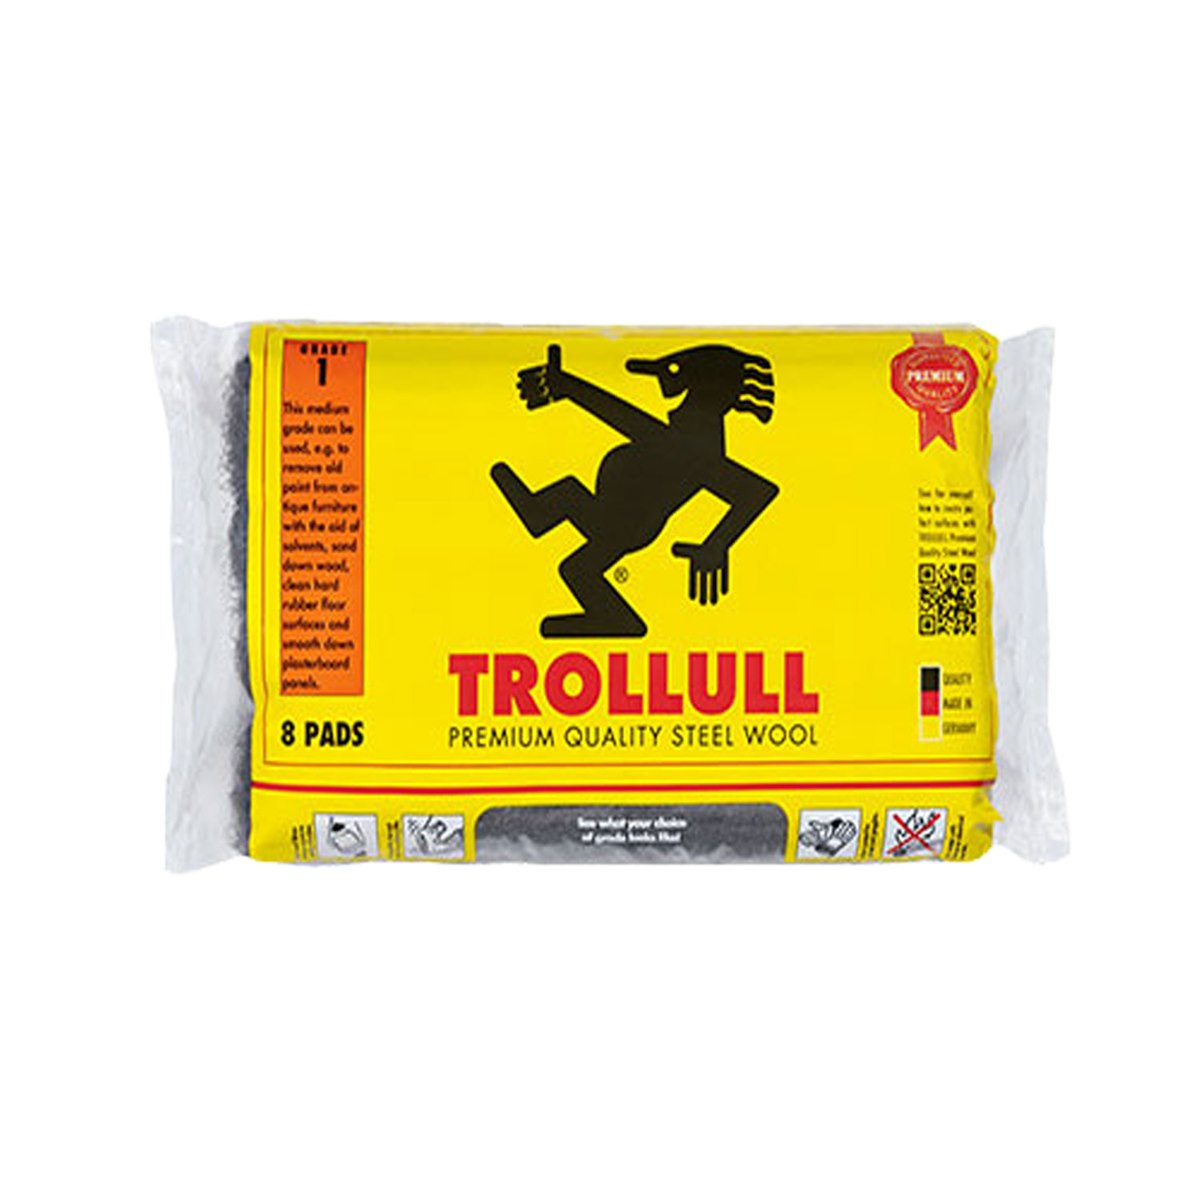 Trollull 8 Pads Steel Wool 0000